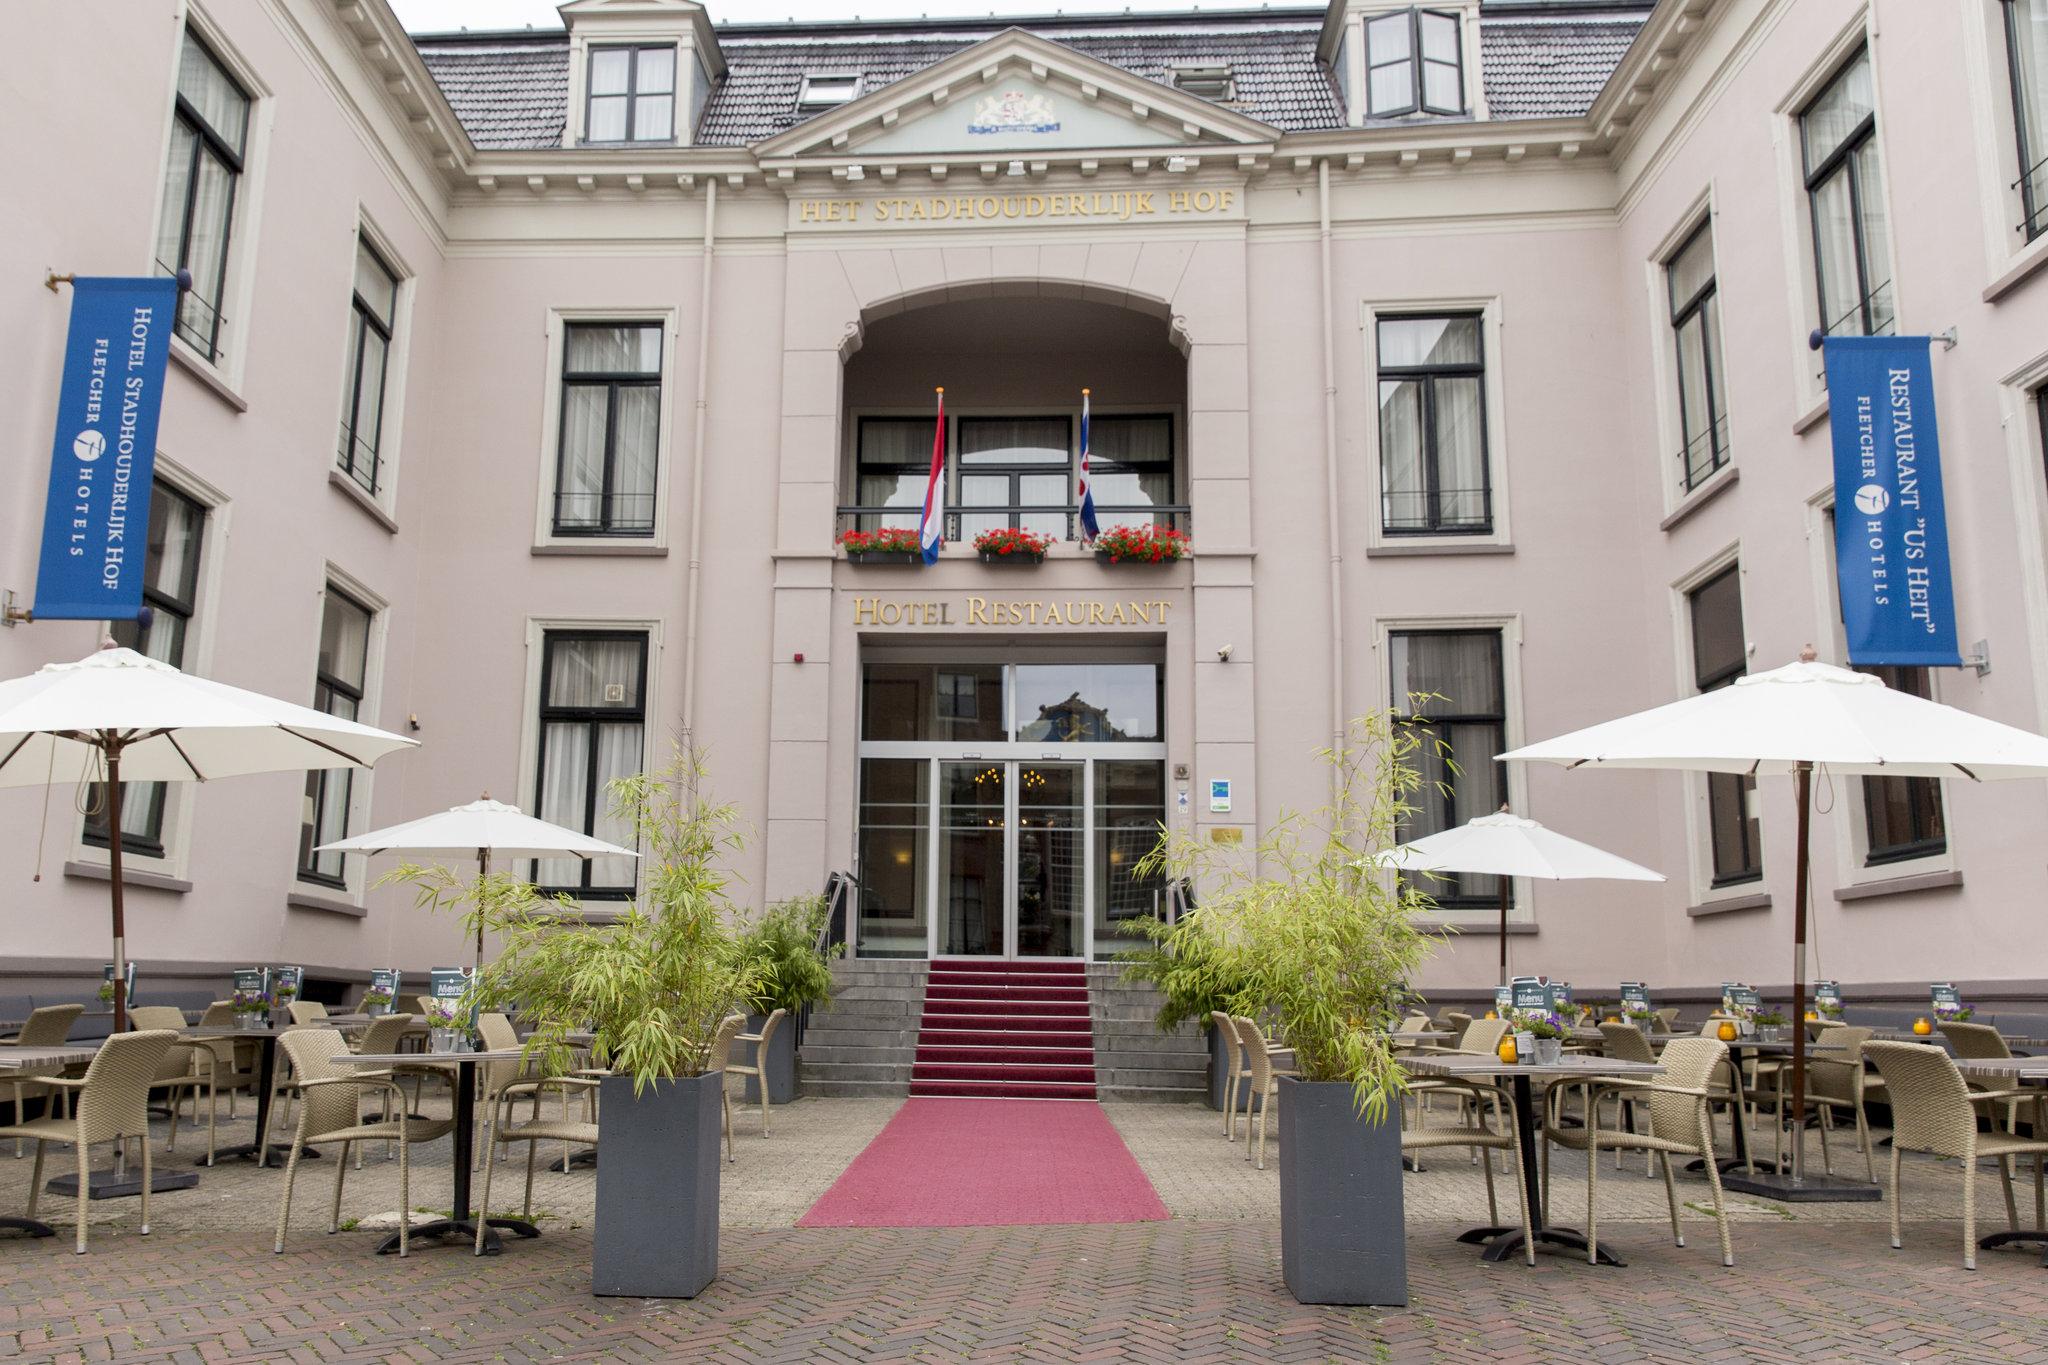 Hotel-Paleis Stadhouderlijk Hof in Leeuwarden, NL